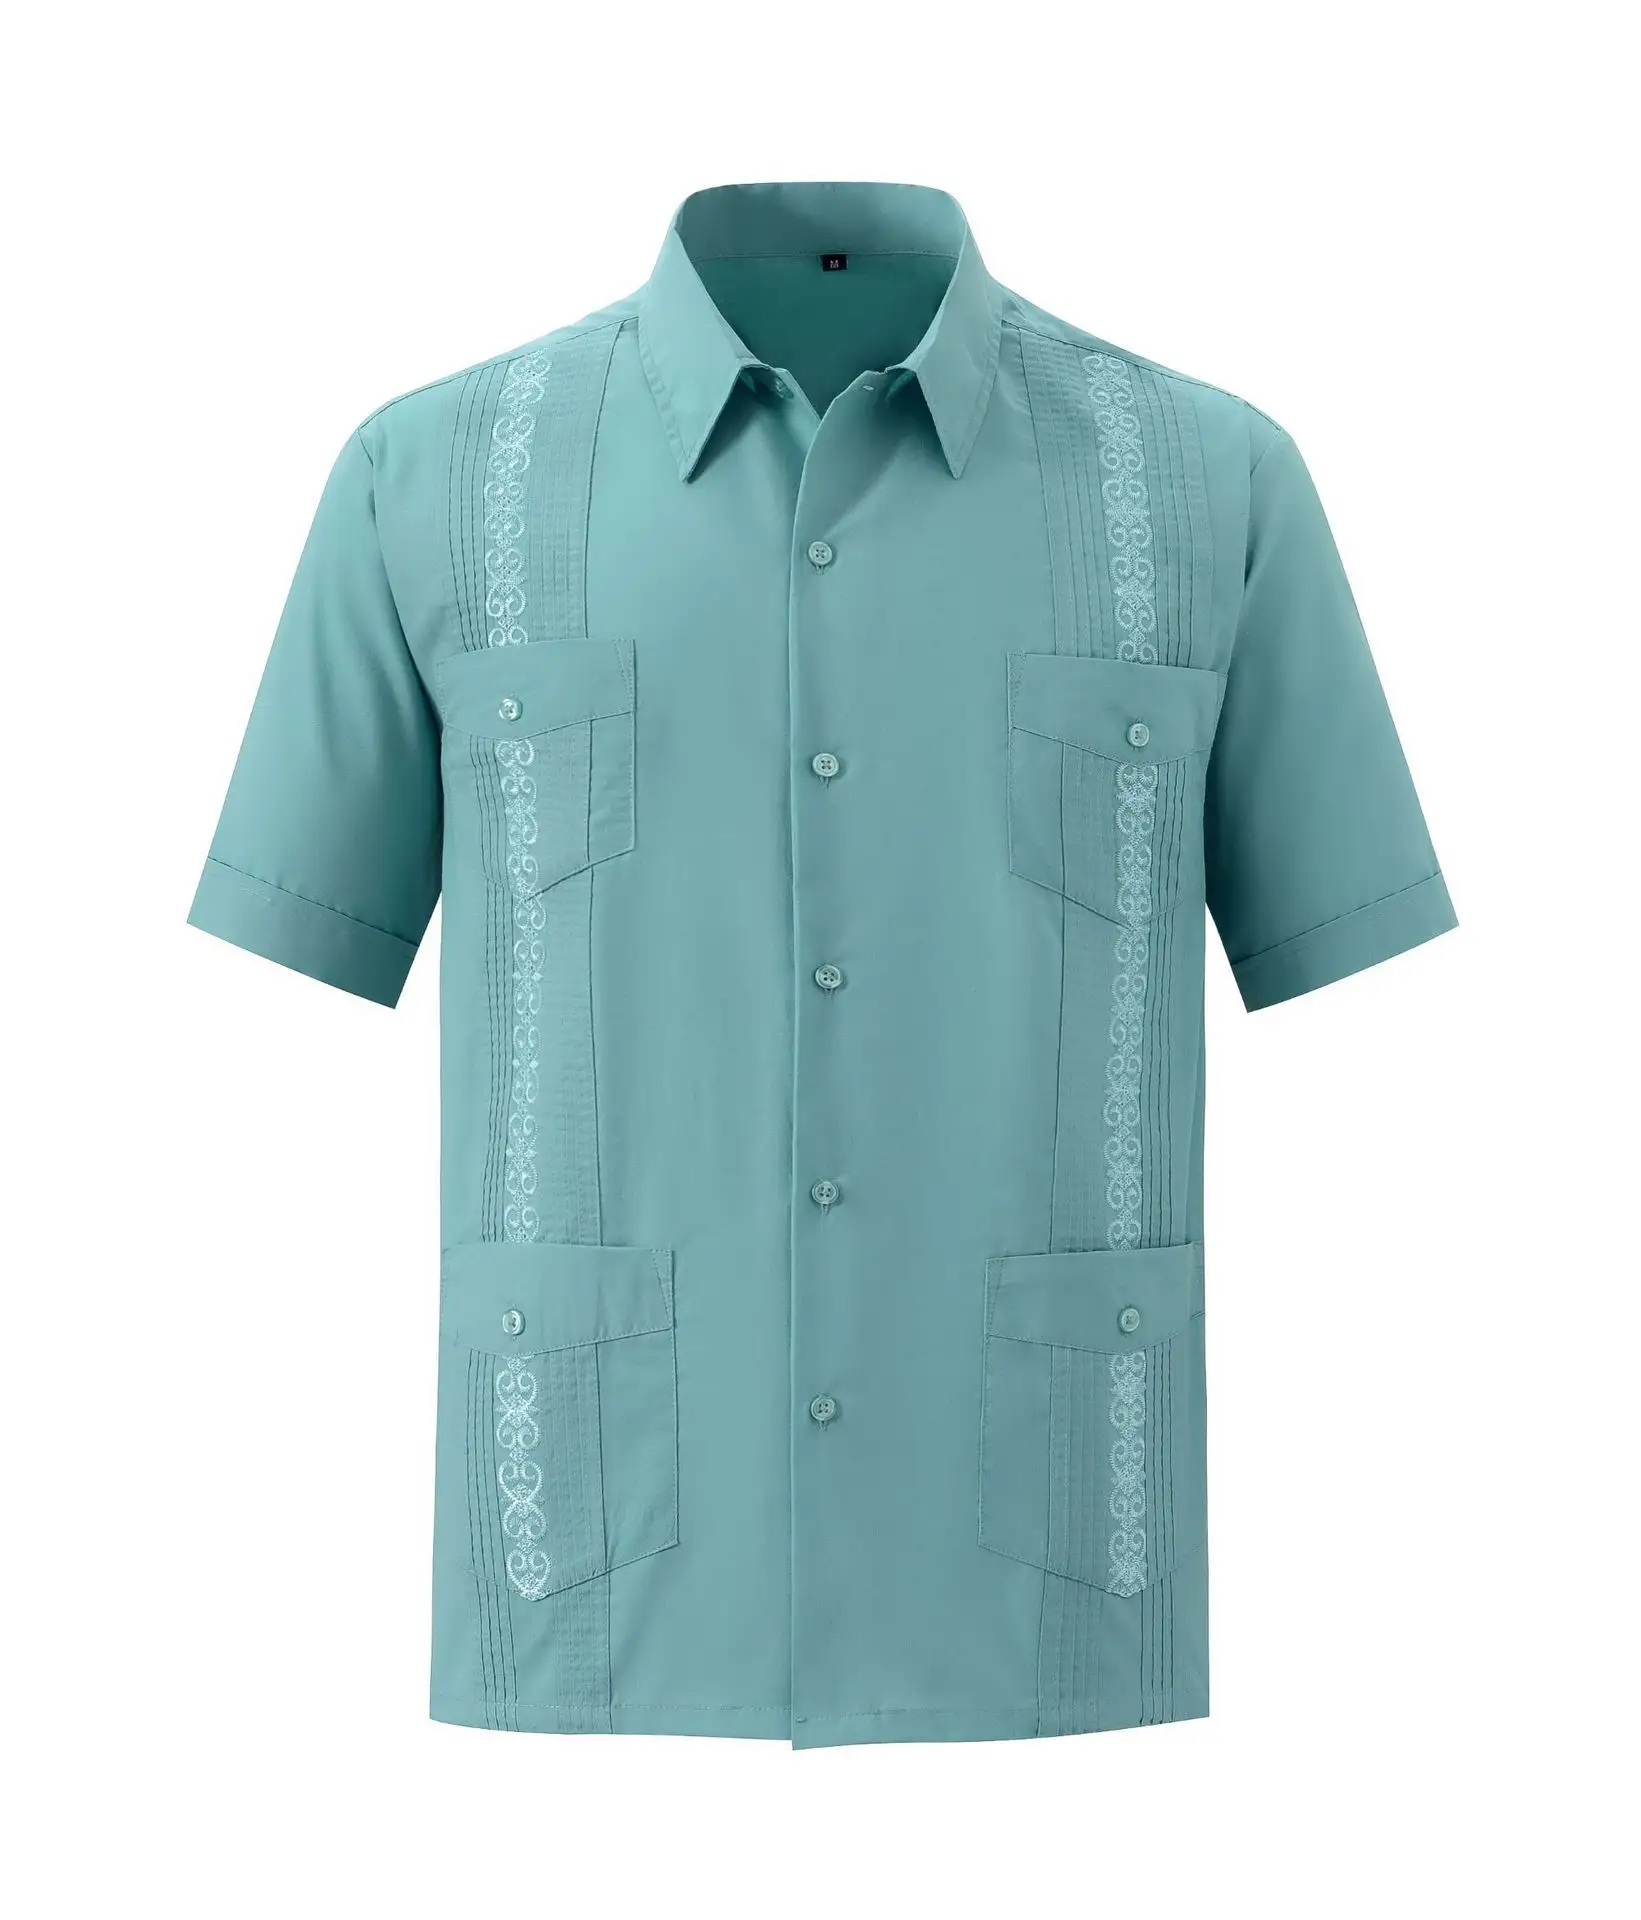 Camisas de poliéster y algodón para hombre, camisas masculinas de manga corta, estilo Vintage, con logotipo personalizado, de alta calidad